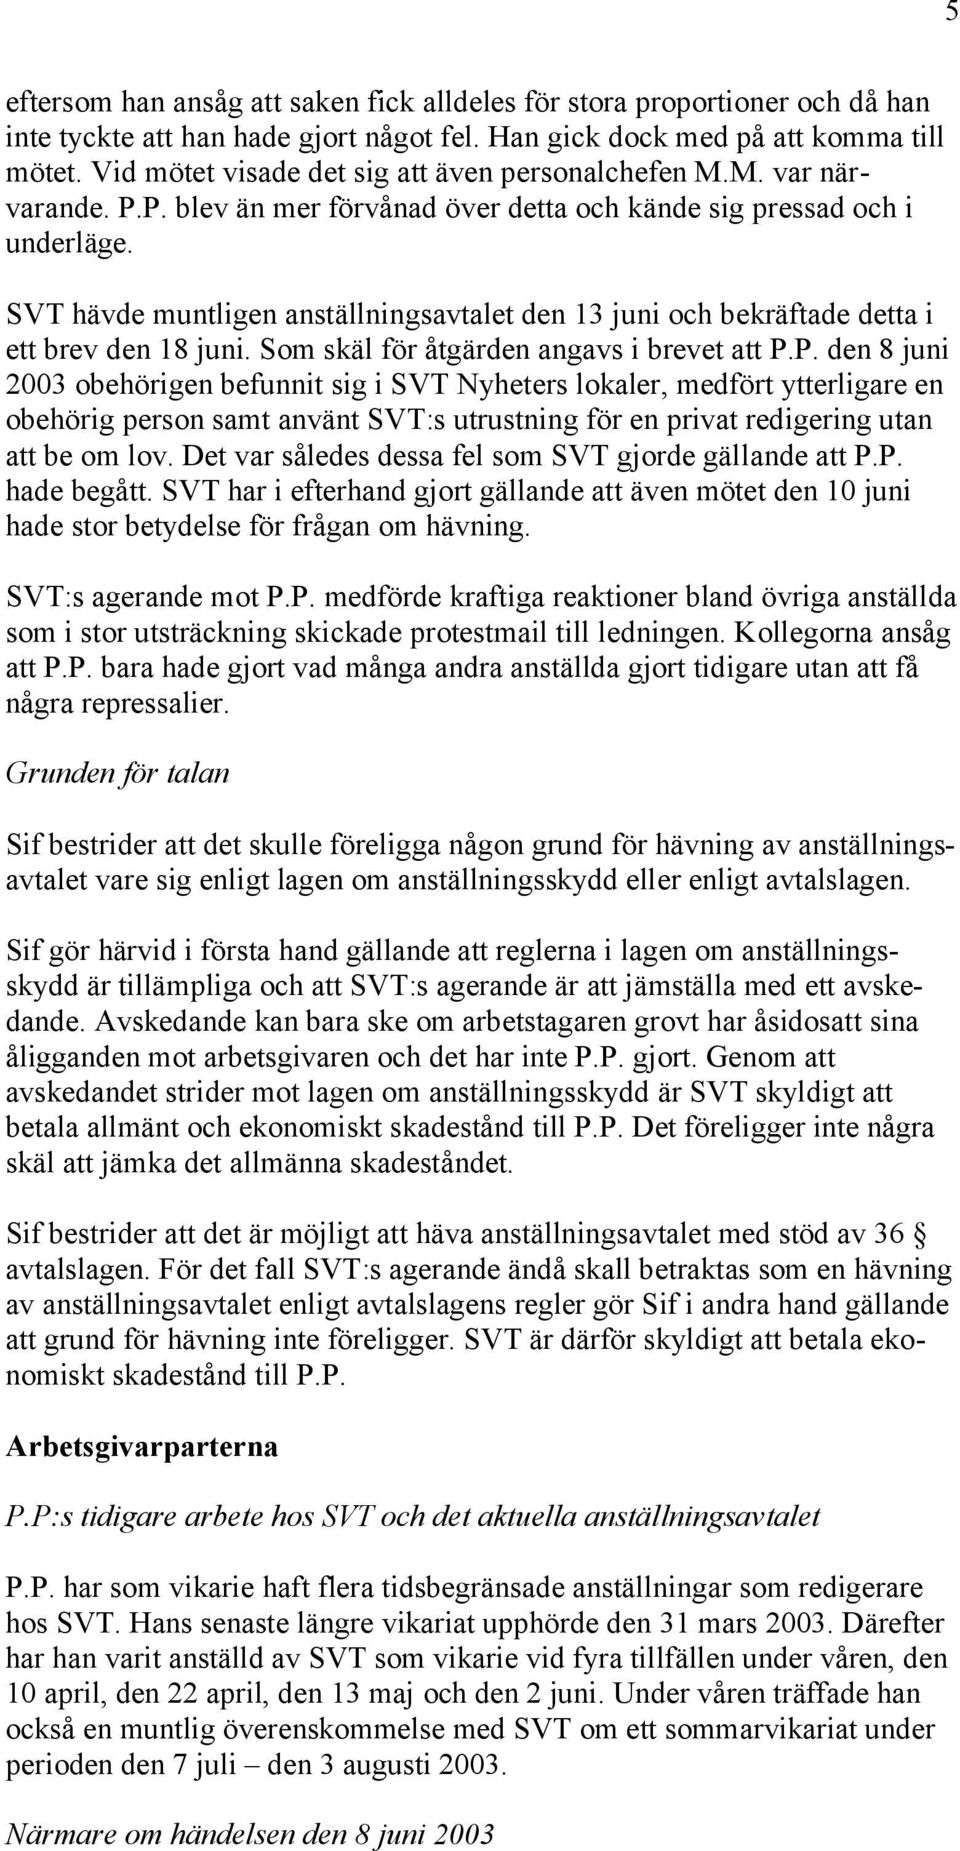 SVT hävde muntligen anställningsavtalet den 13 juni och bekräftade detta i ett brev den 18 juni. Som skäl för åtgärden angavs i brevet att P.